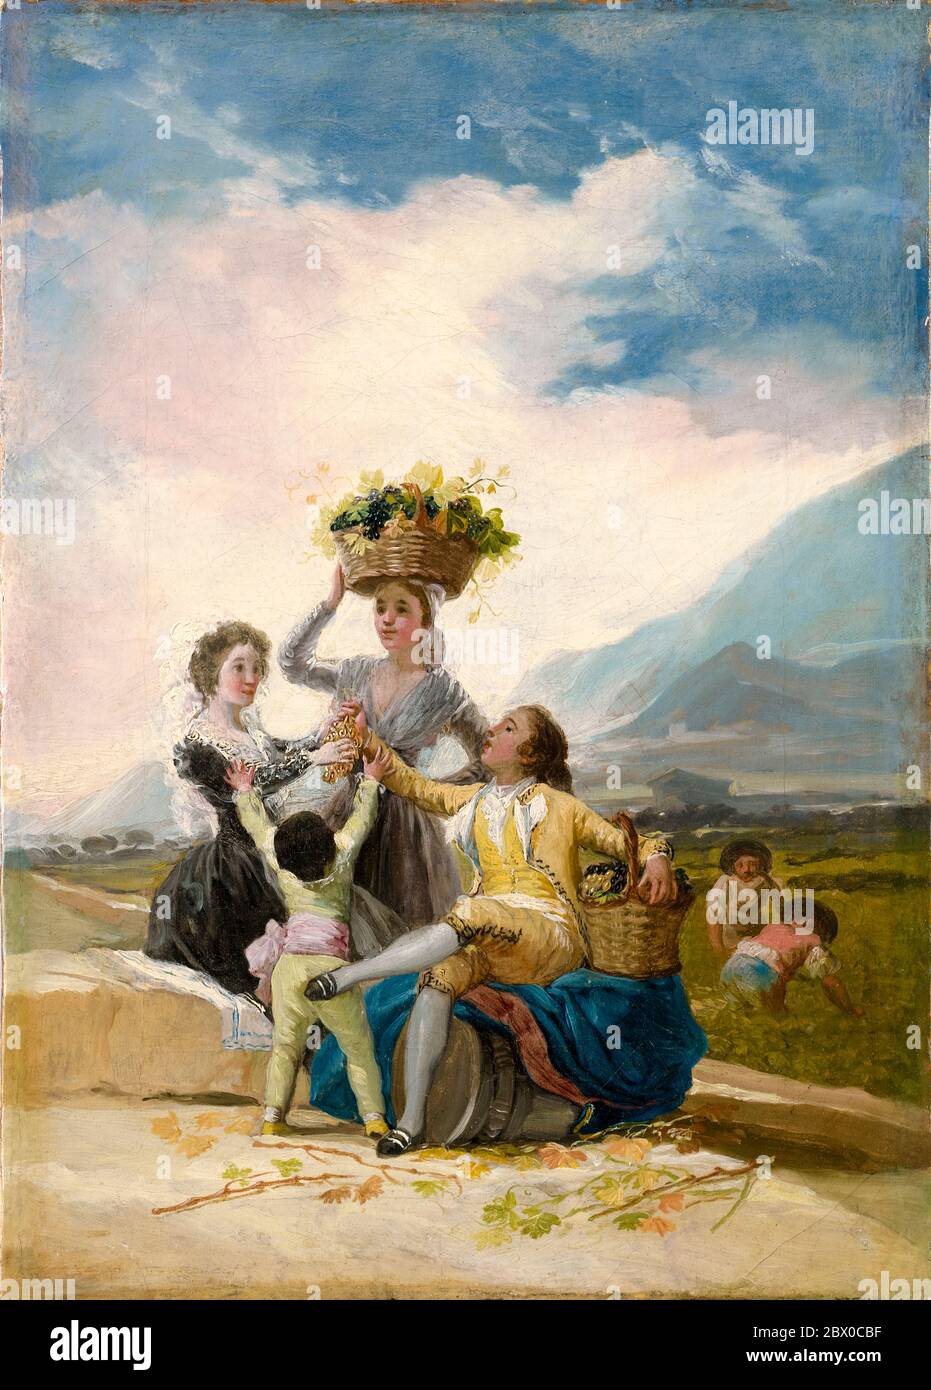 Francisco Goya, automne, peinture, 1786 Banque D'Images